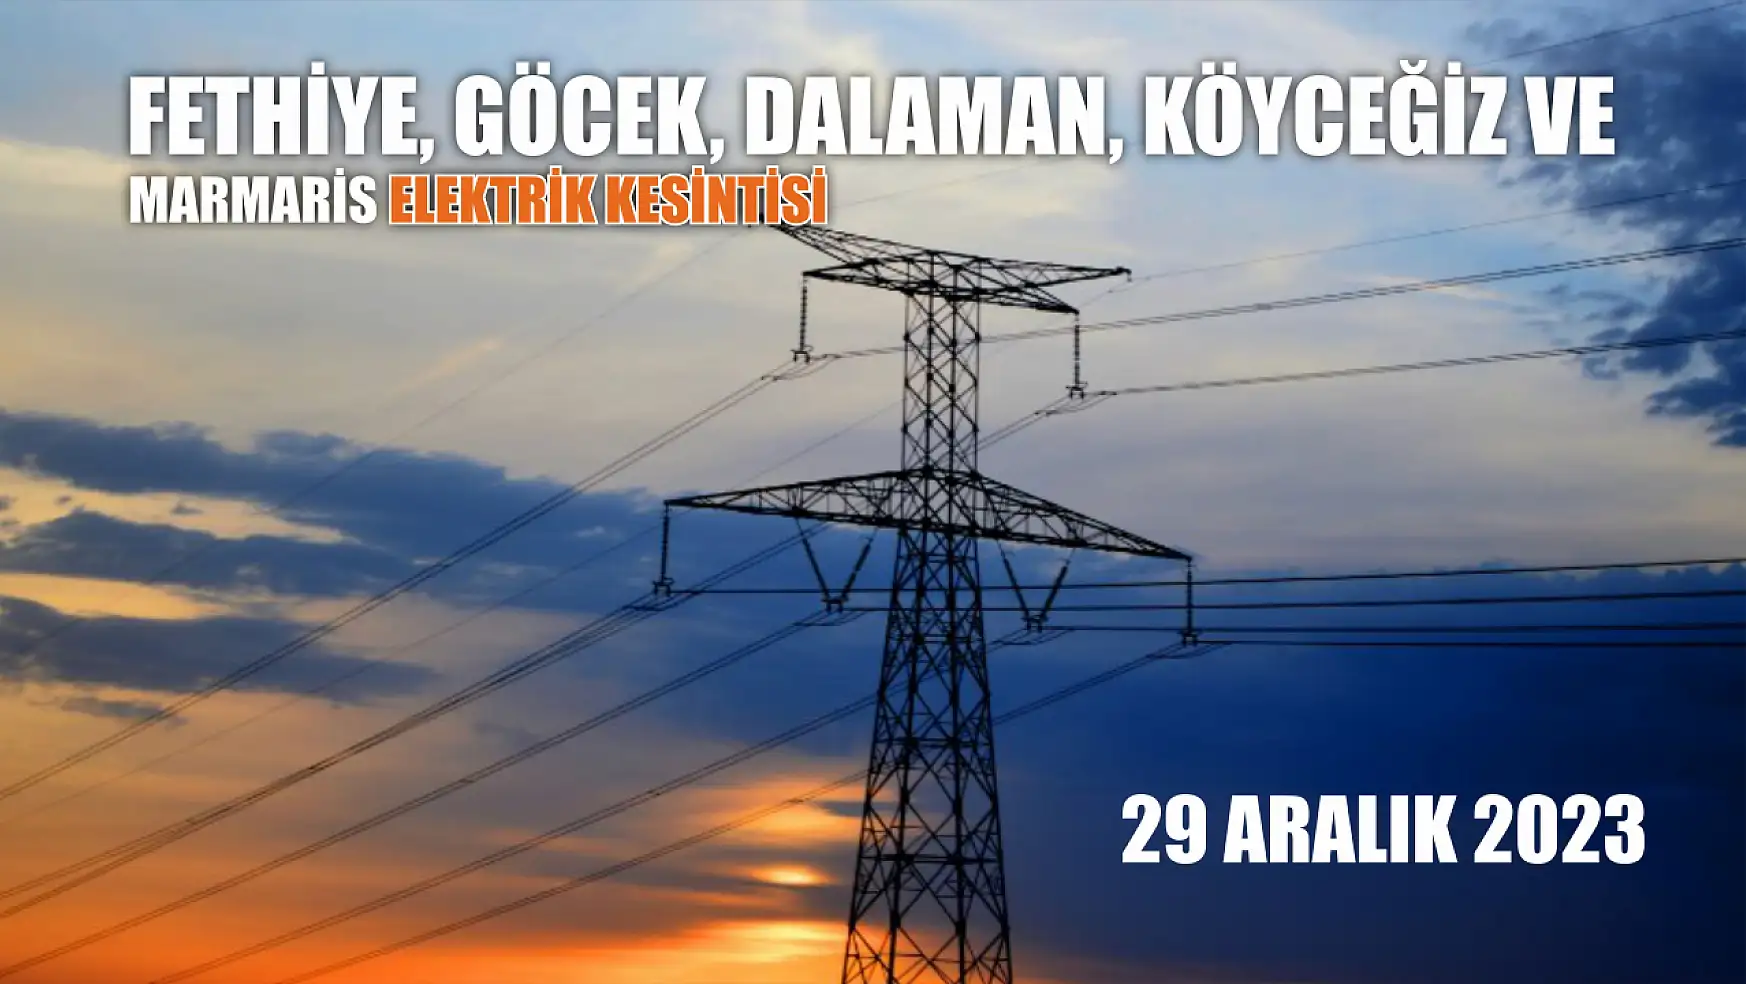 Fethiye, Göcek, Dalaman, Köyceğiz ve Marmaris elektrik kesintisi 29 Aralık 2023